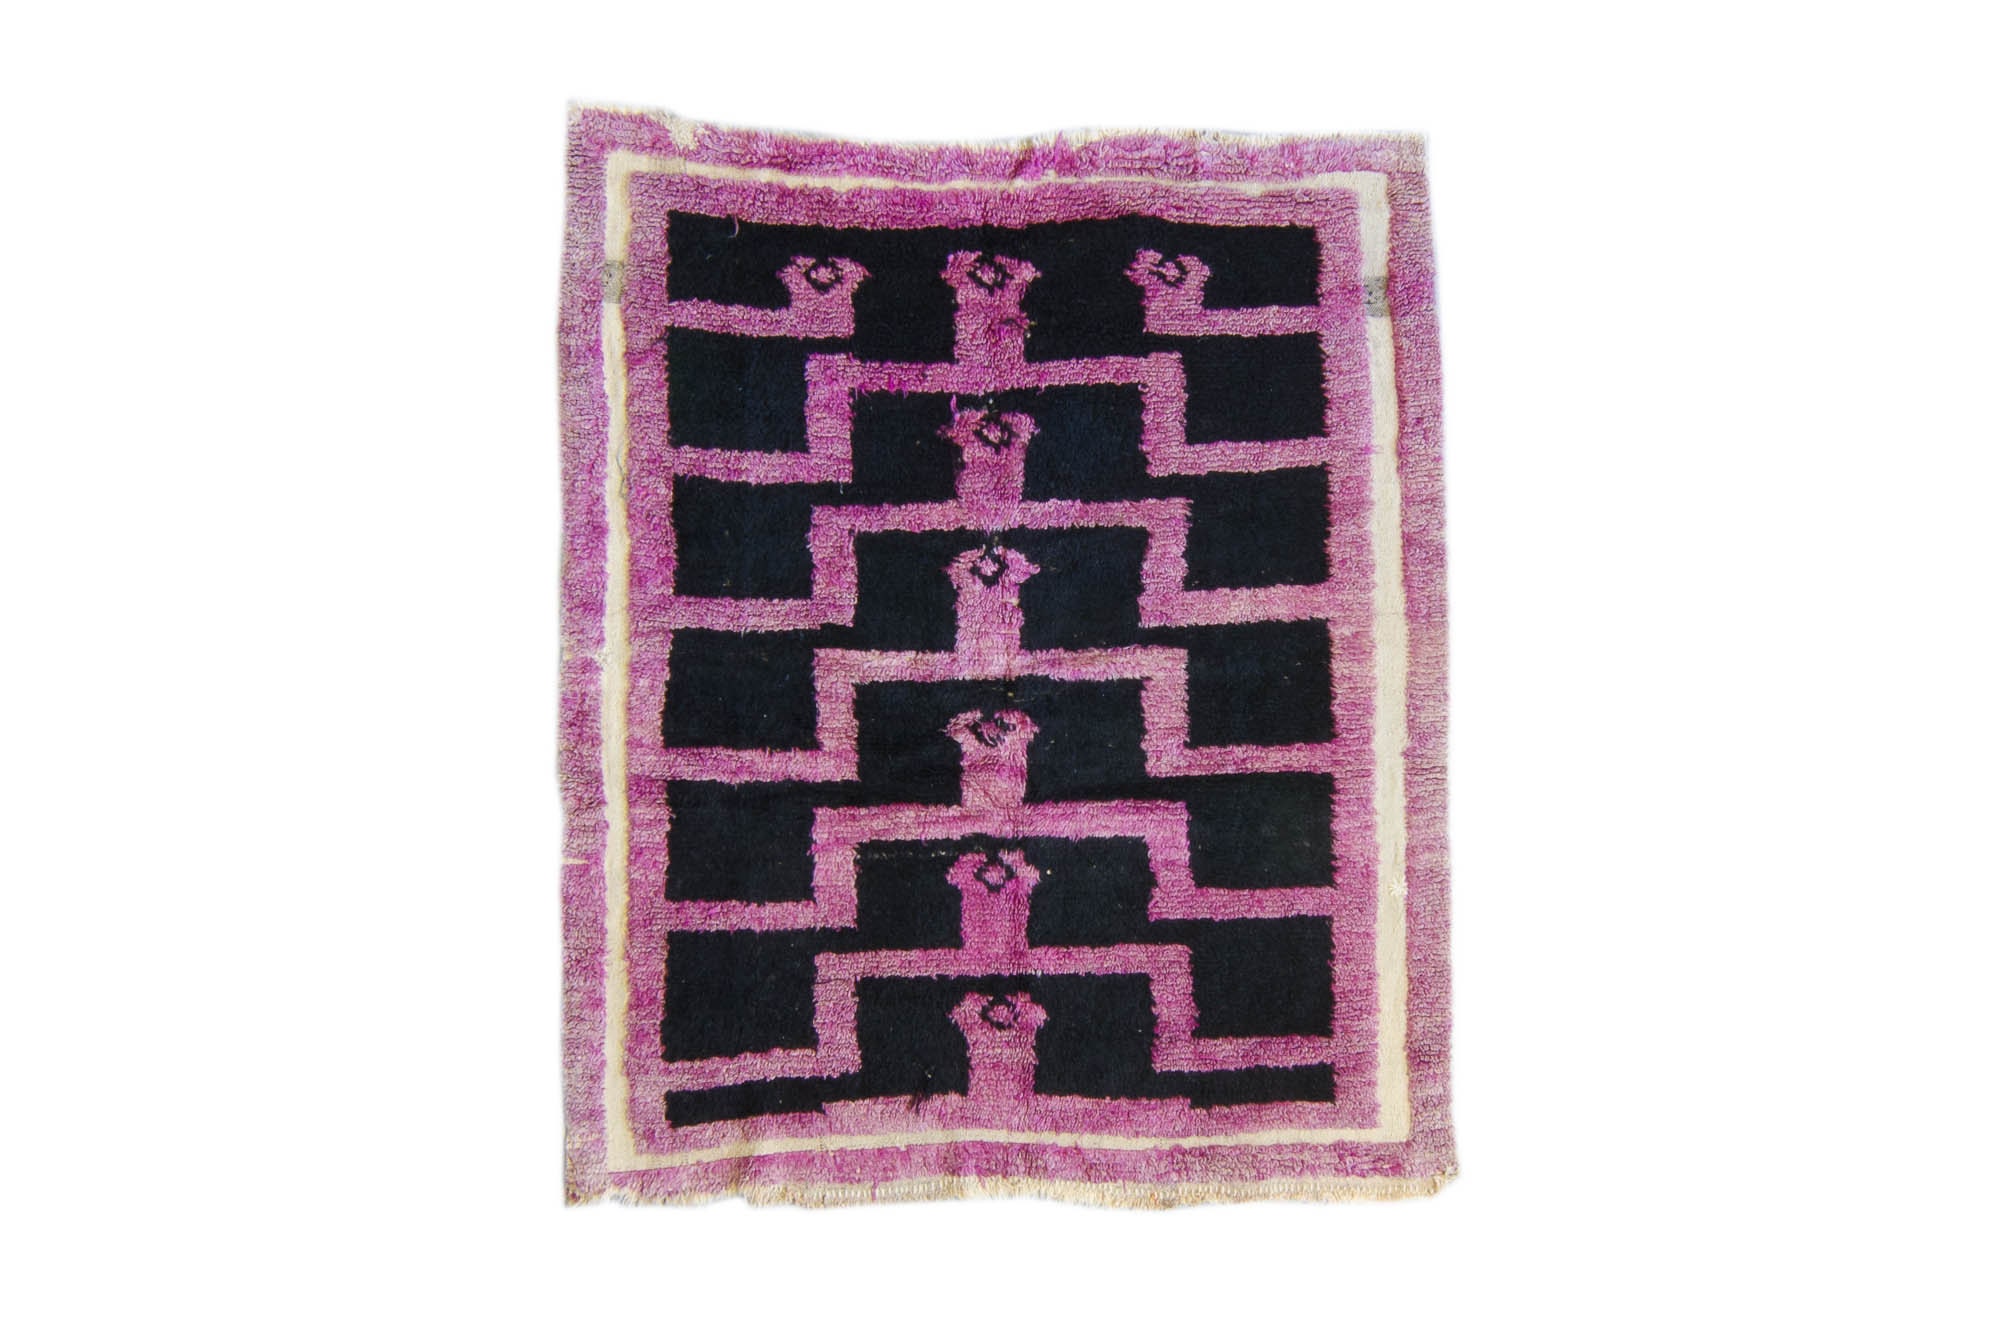 Vintage Tulu Rug 3'8.5 X 4'5 Handmade Anatolian Geometric Purple Black Wool Small Area Accent 1960's